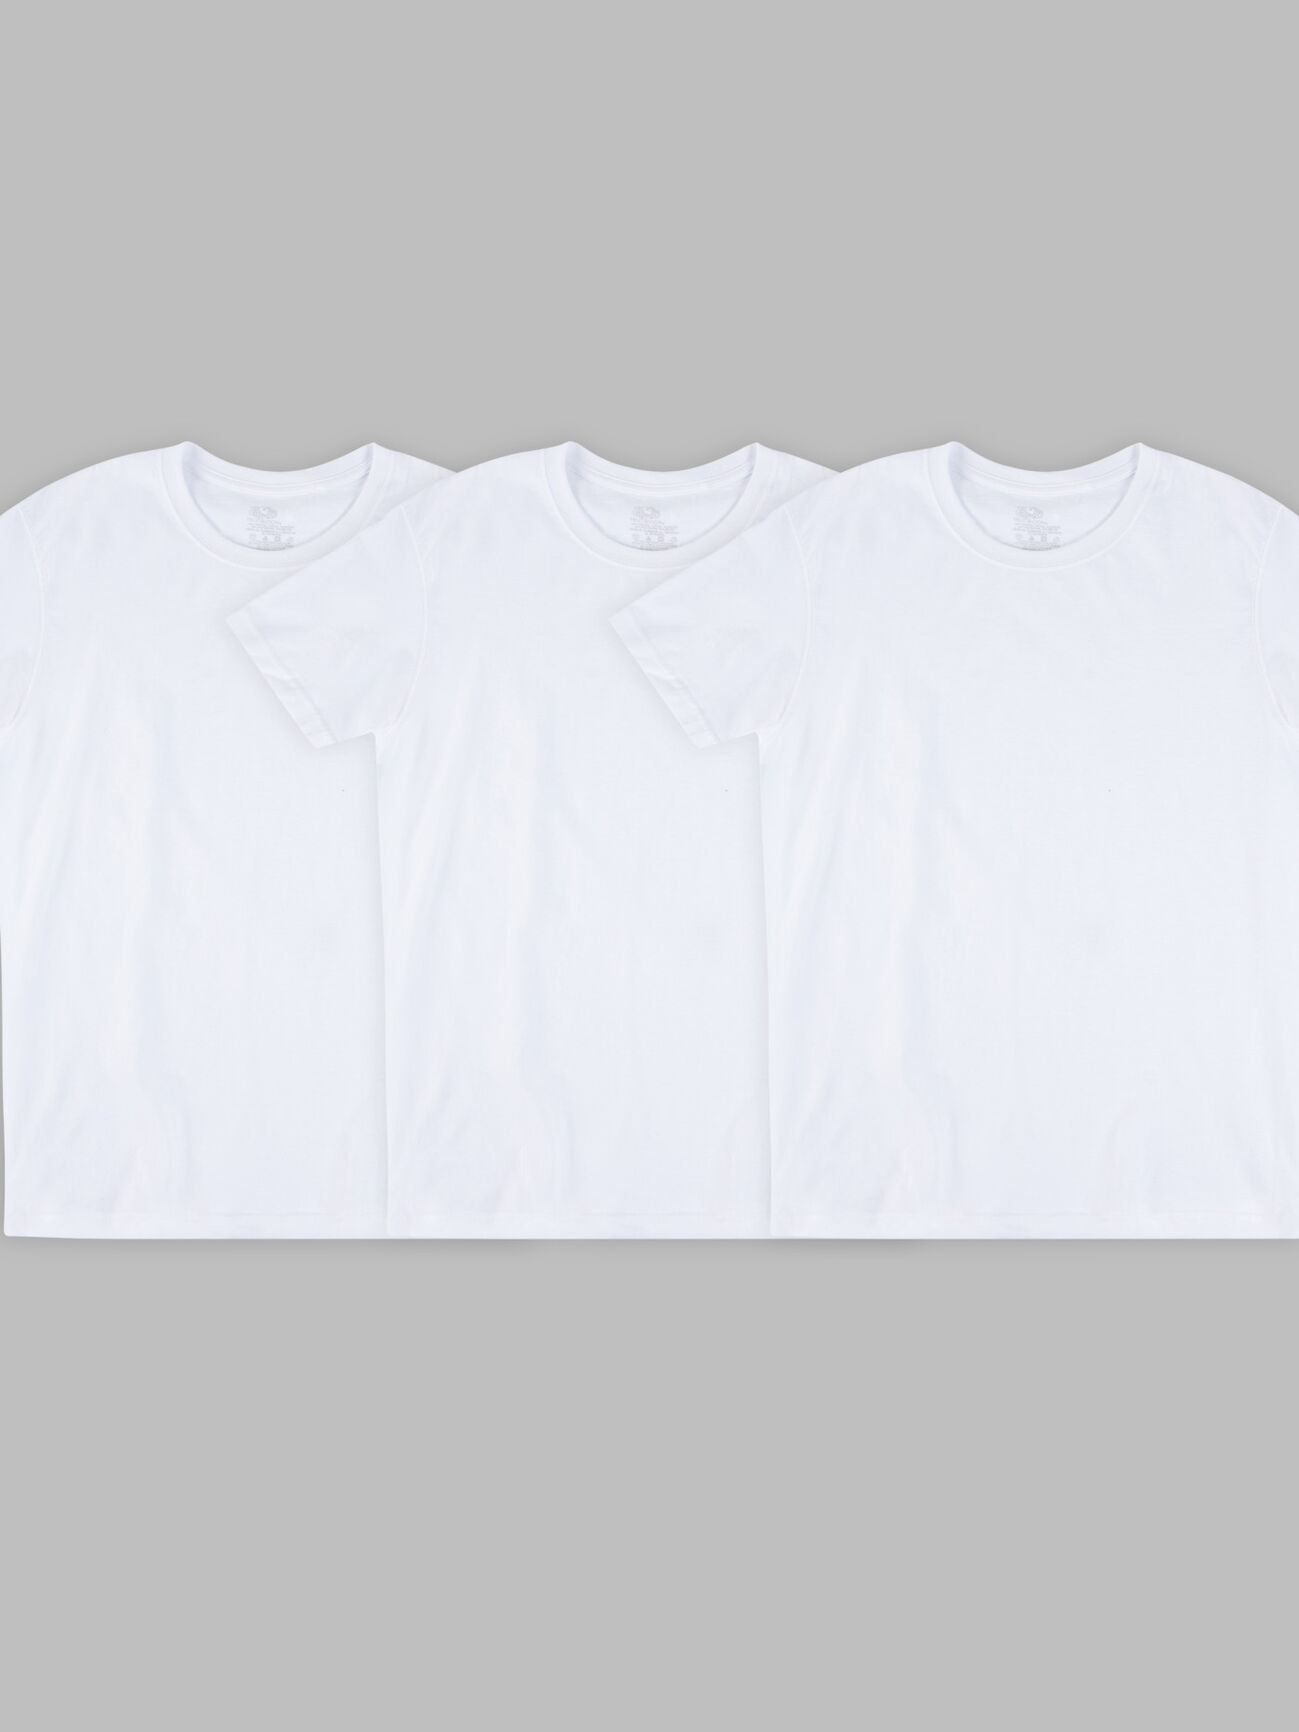 Hanes Big Man's 3-Pack Crewneck T-Shirt